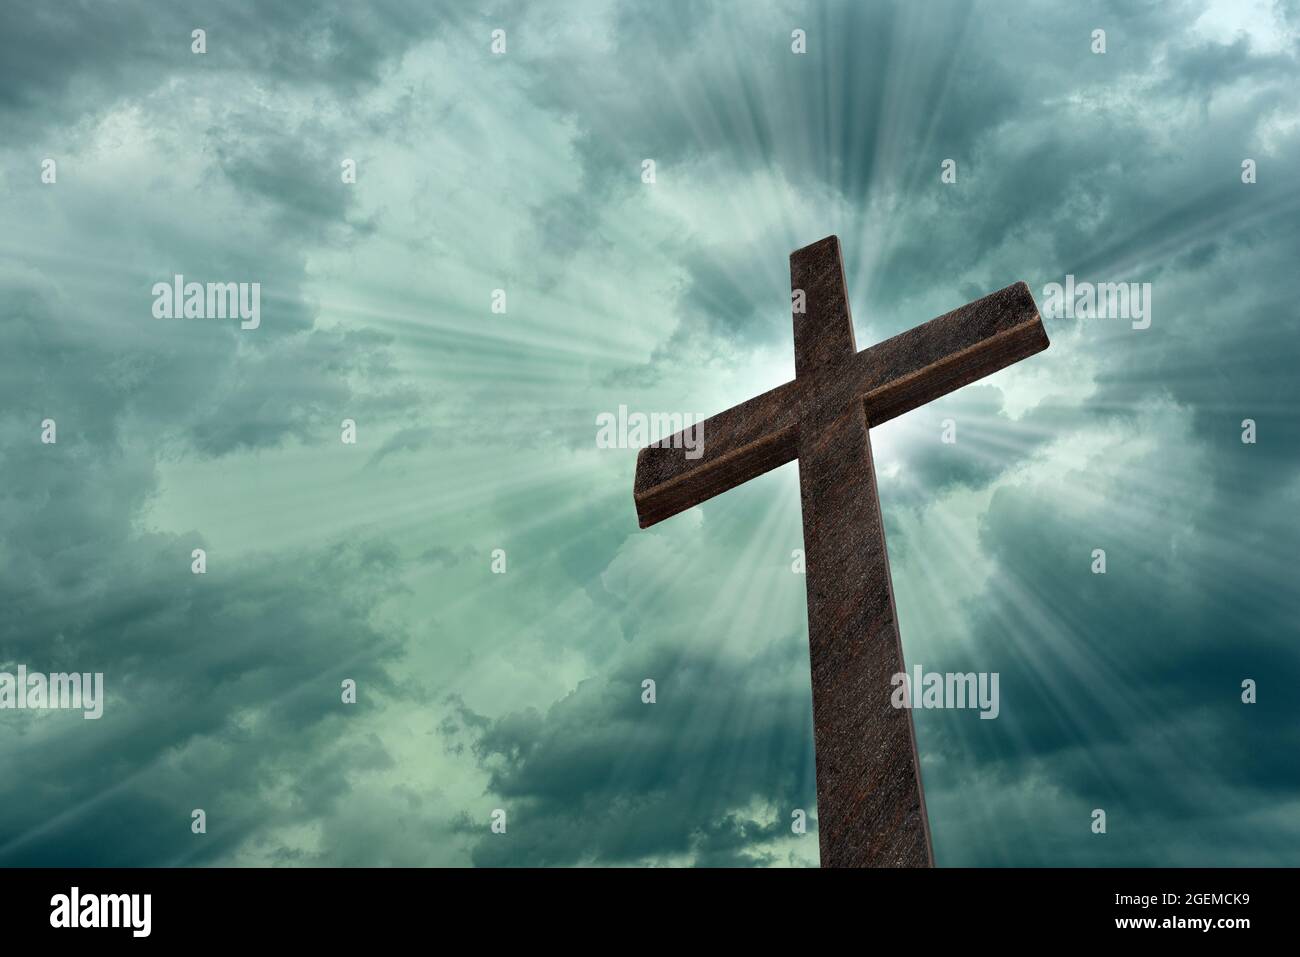 Dramatisches Bild, das ein religiöses Kirchenkreuz zeigt, eingerahmt von einem Himmel aus hellen Lichtstrahlen, die das Kommen des Herrn zeigen. Speicherplatz kopieren, der am Th Stockfoto